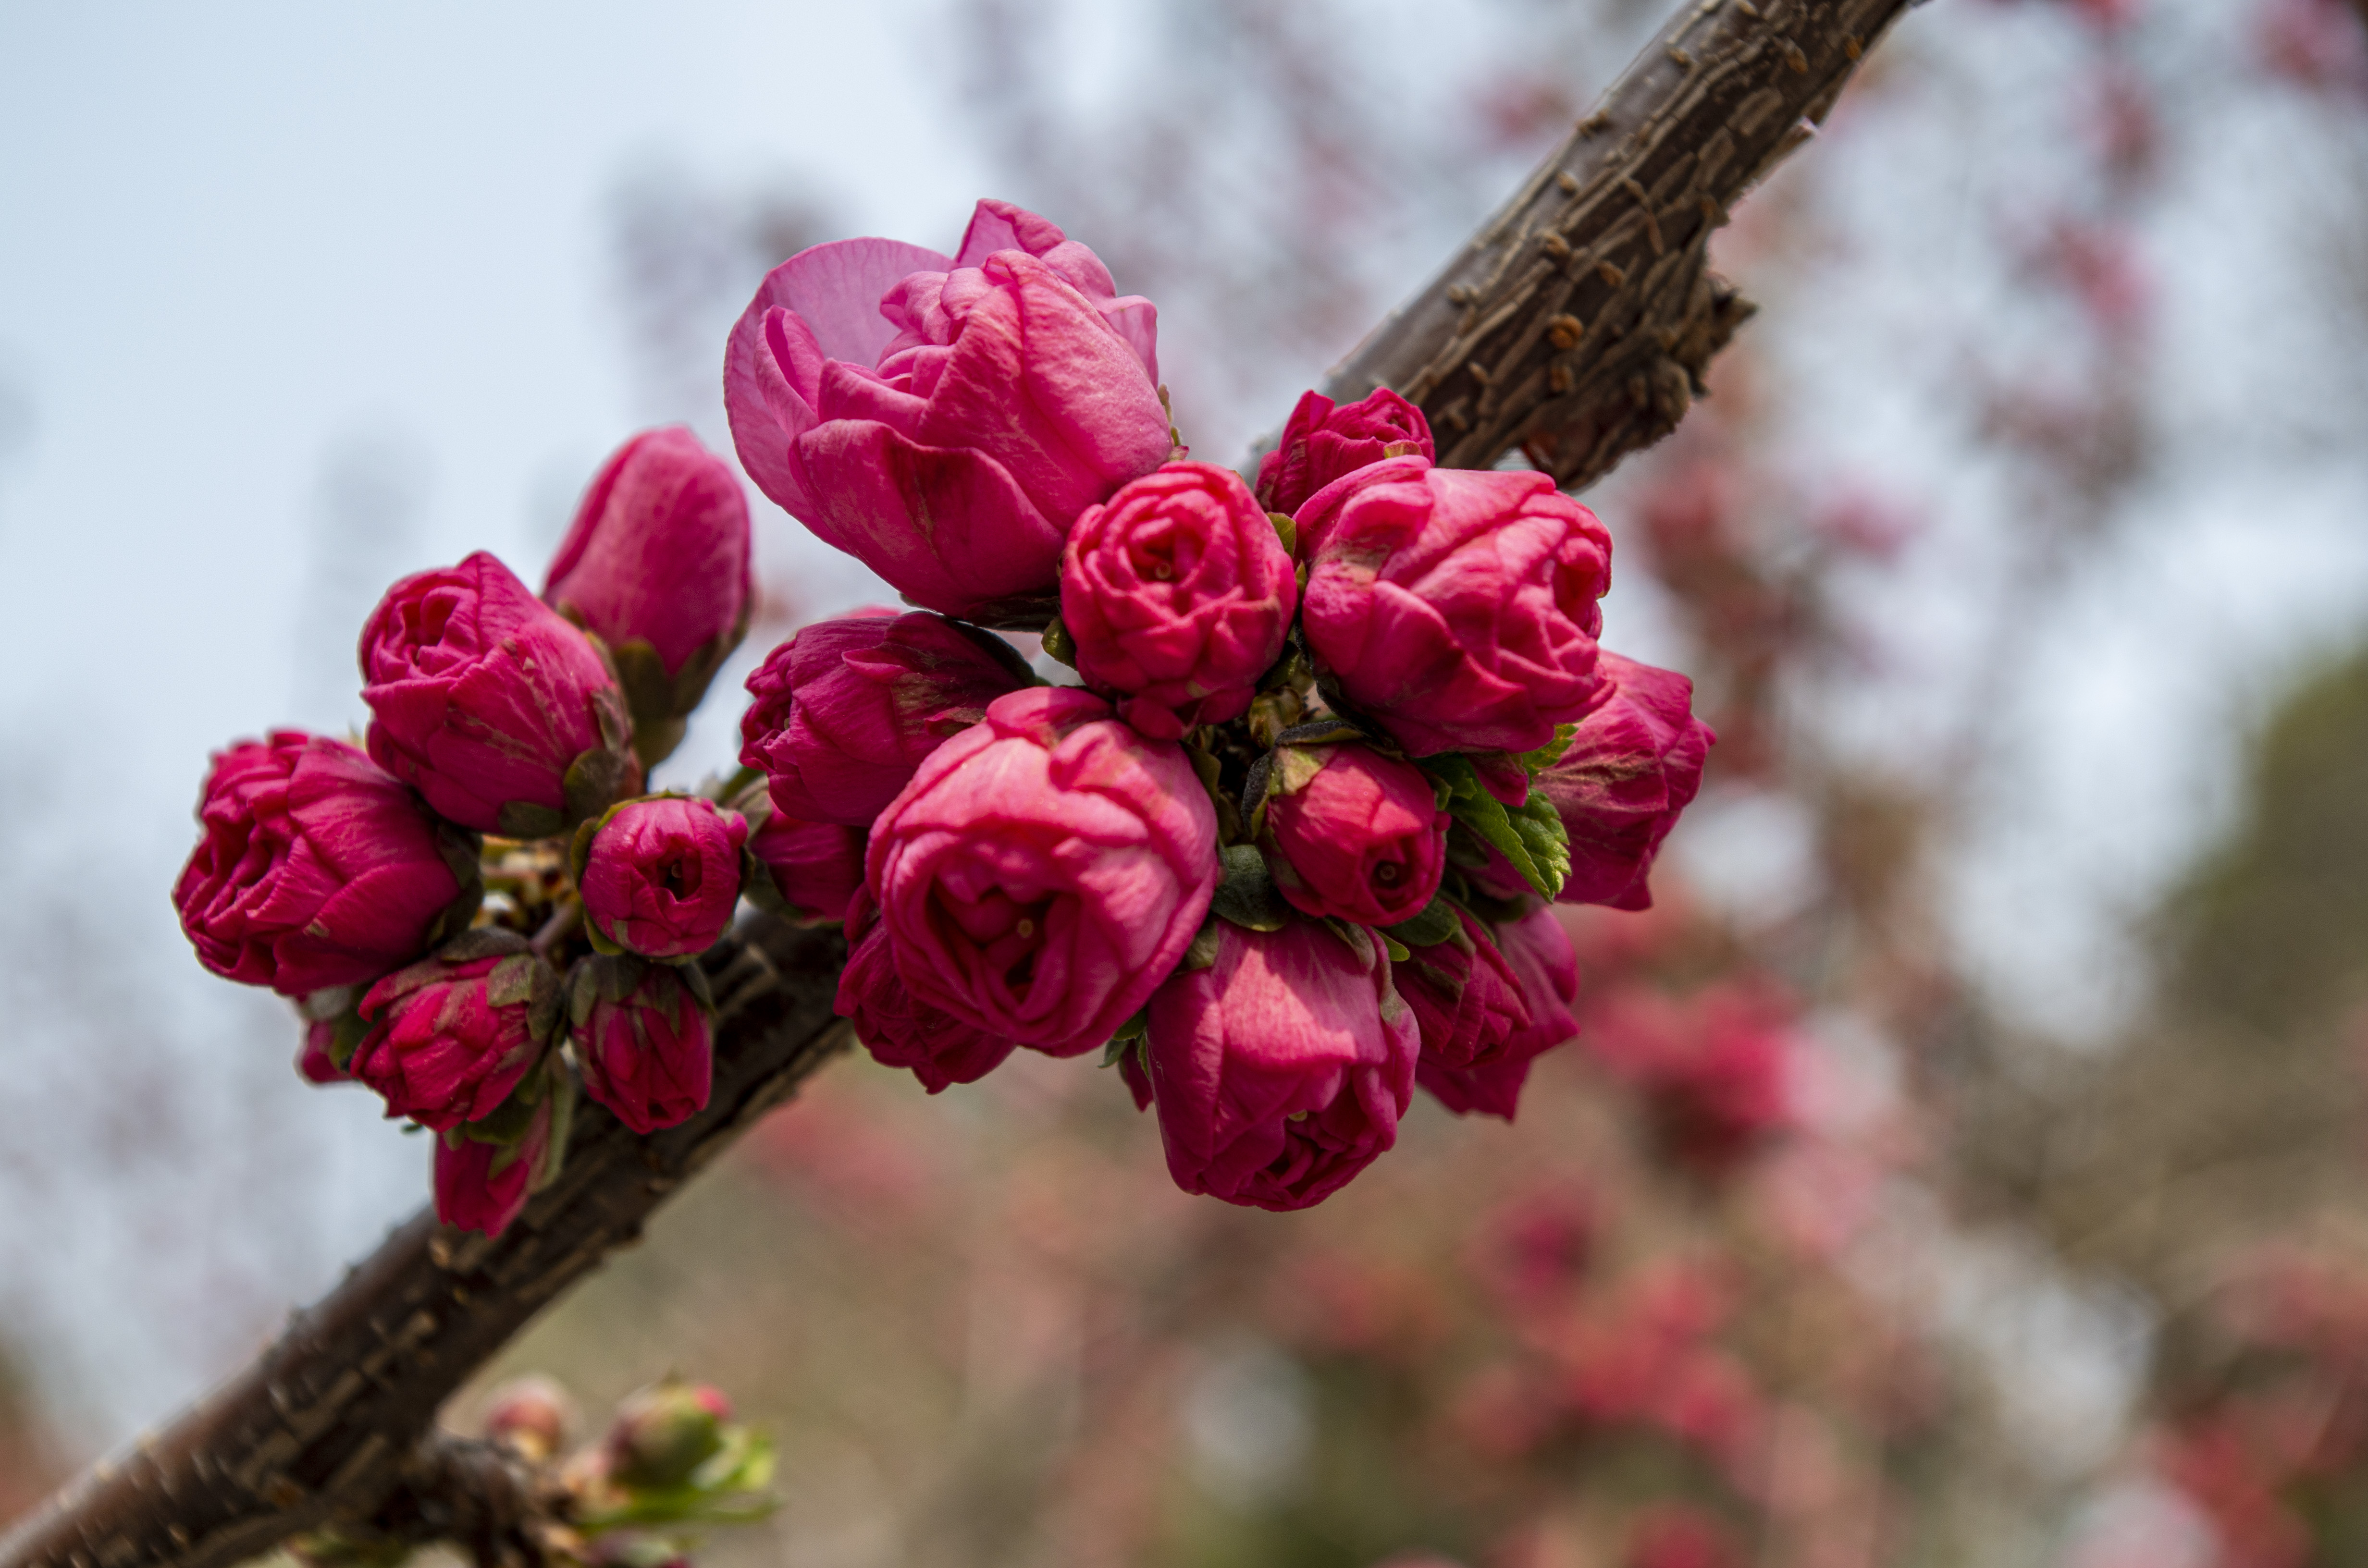 春光明媚,花团锦簇重瓣榆叶梅,让人赏心悦目